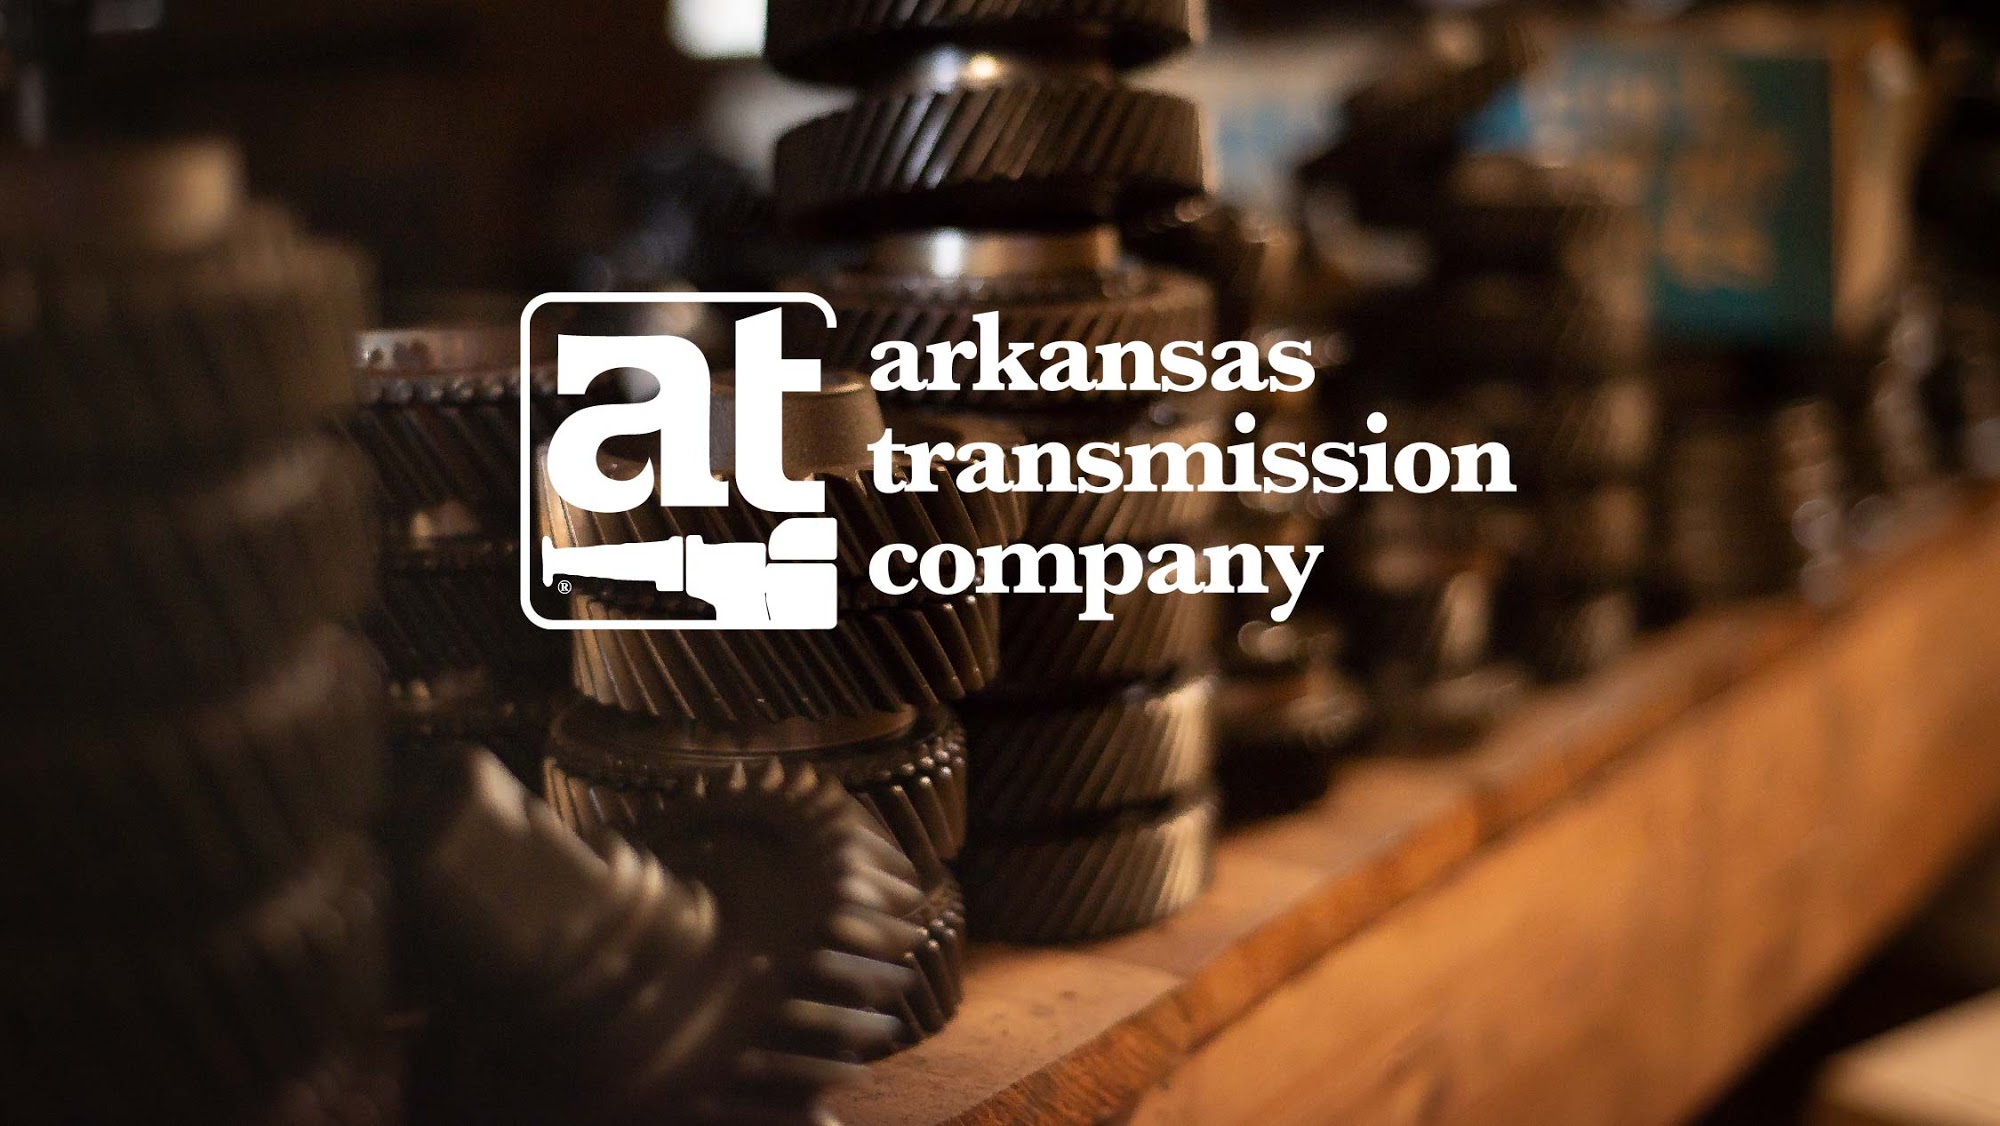 Arkansas Transmission Company